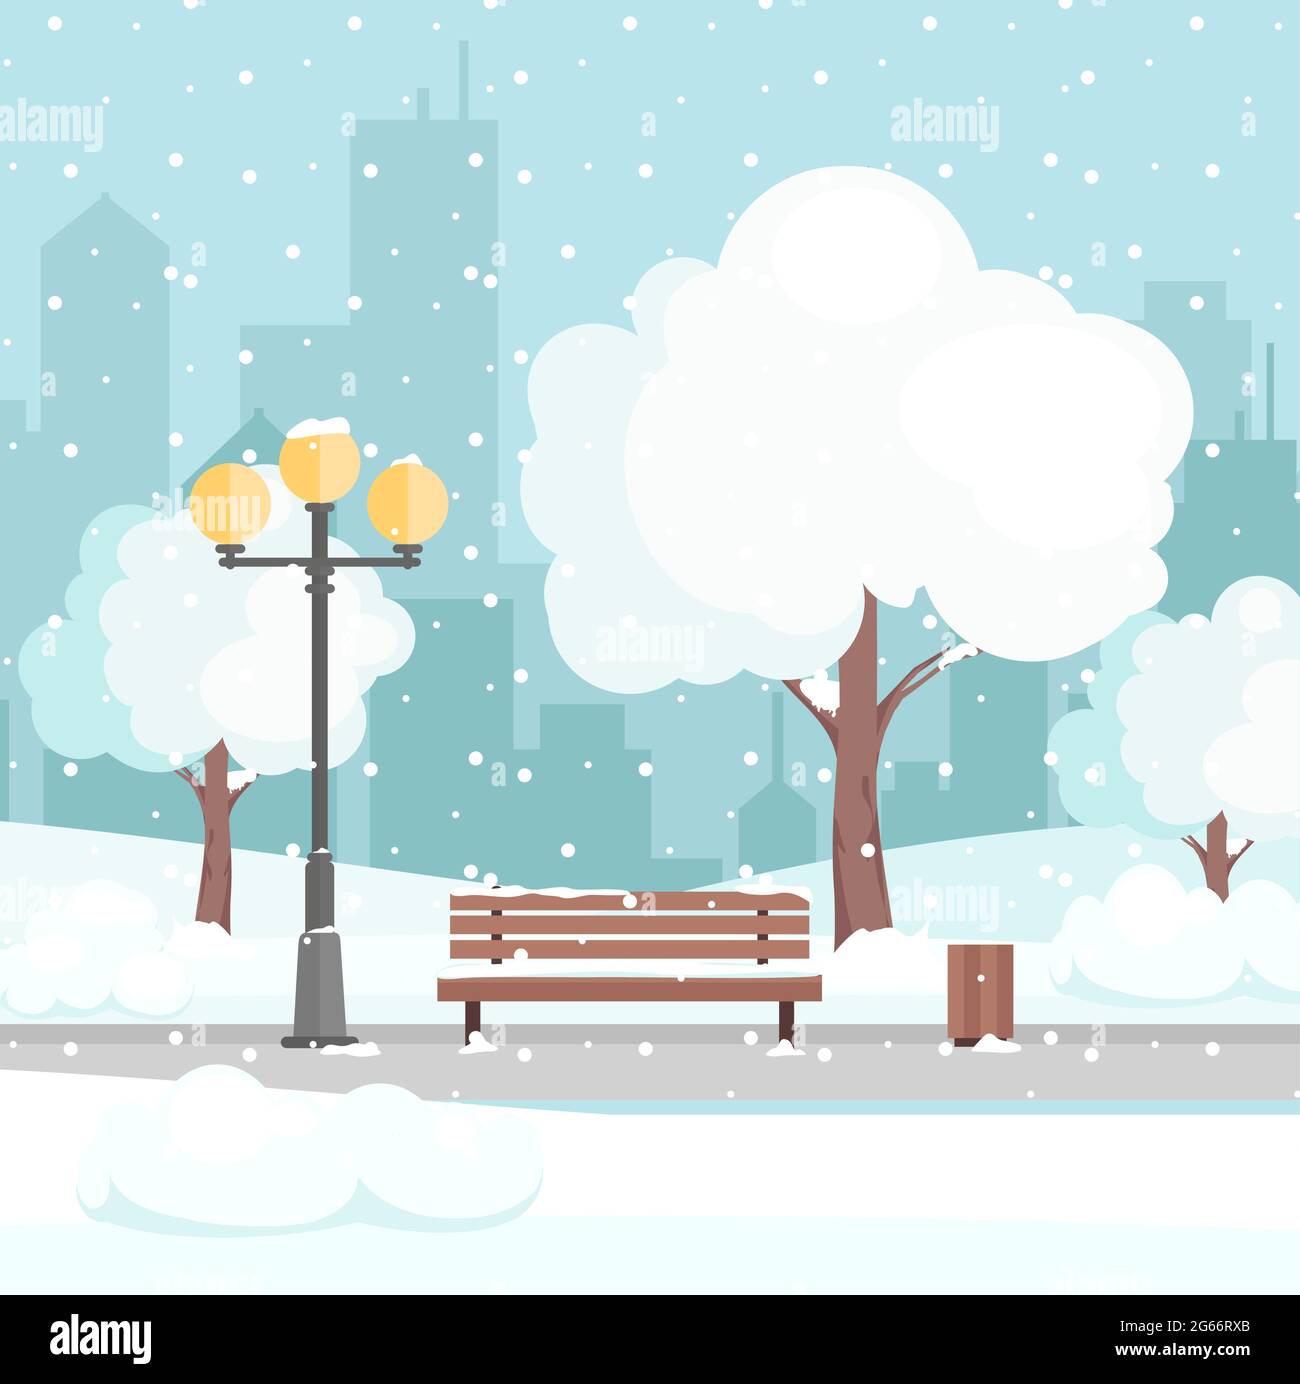 Ilustración vectorial del parque de invierno de la ciudad con nieve y el fondo moderno de la ciudad. Banco en el parque de la ciudad de invierno, concepto de vacaciones de invierno en estilo plano de dibujos animados Ilustración del Vector